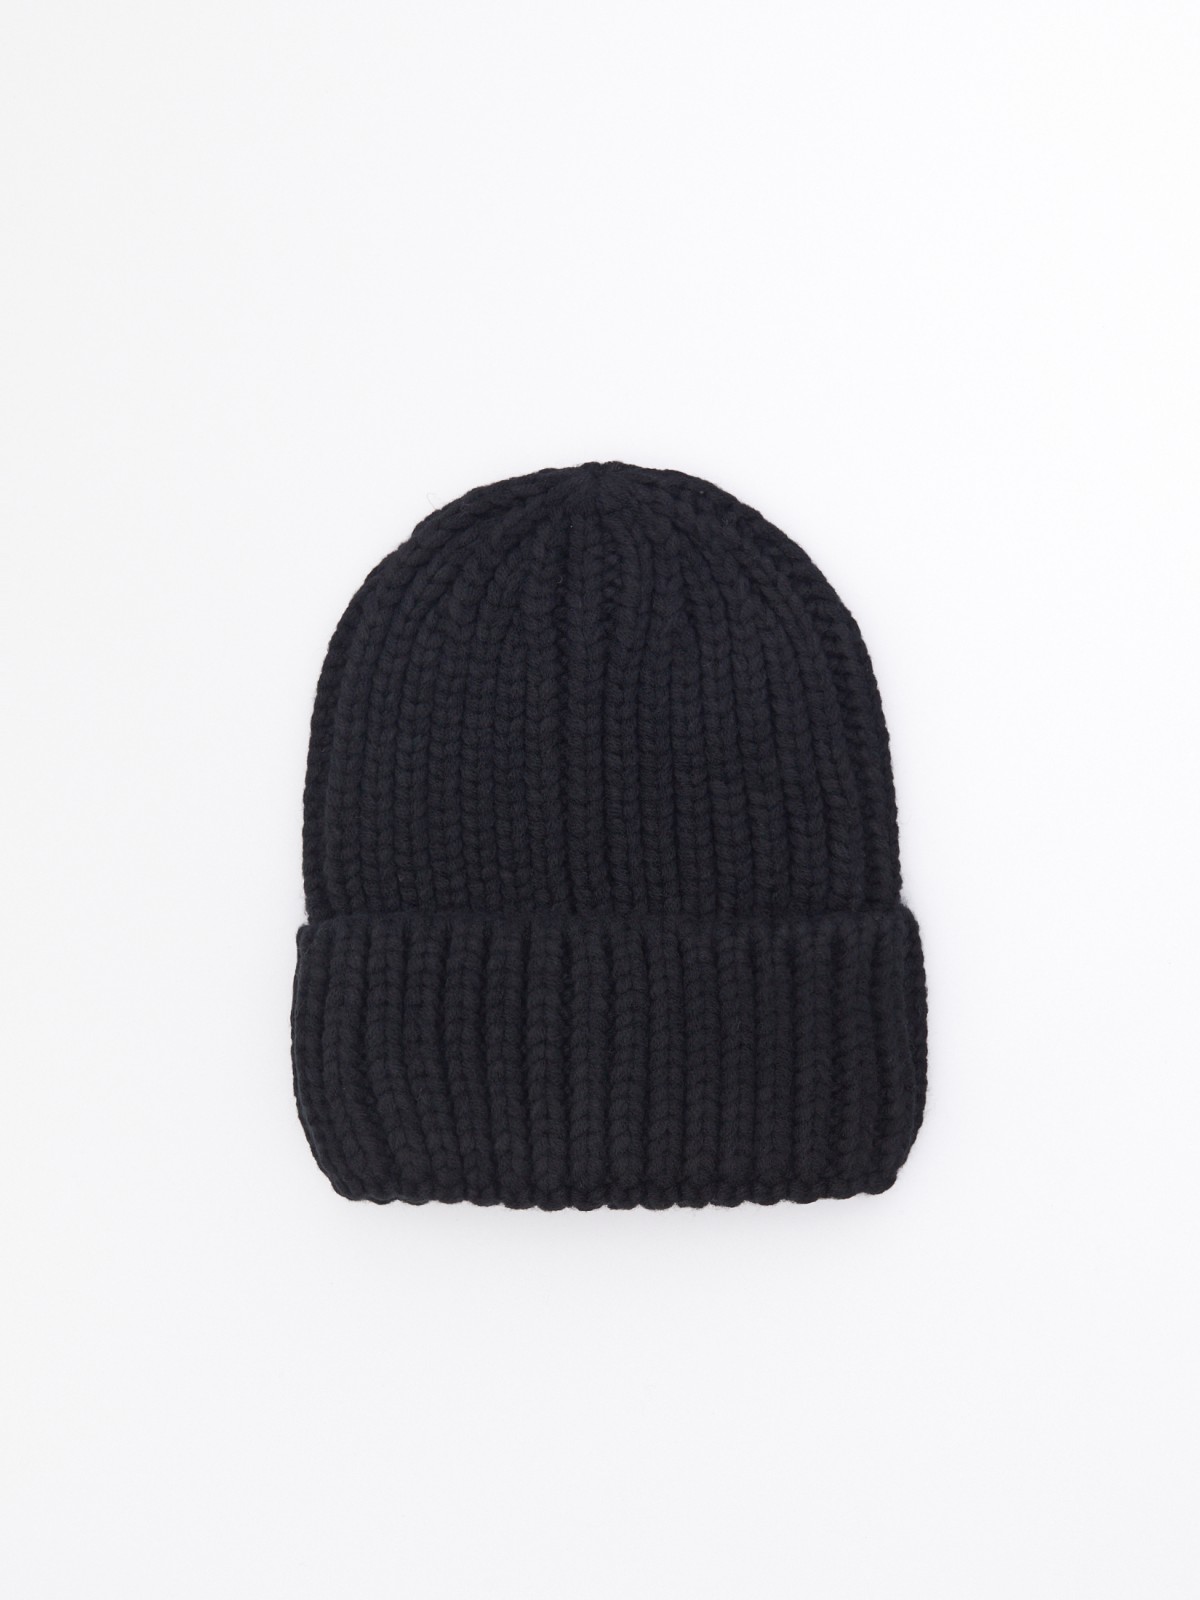 Тёплая вязаная шапка-бини из акрила с отворотом zolla 02342924G155, цвет черный, размер 54-58